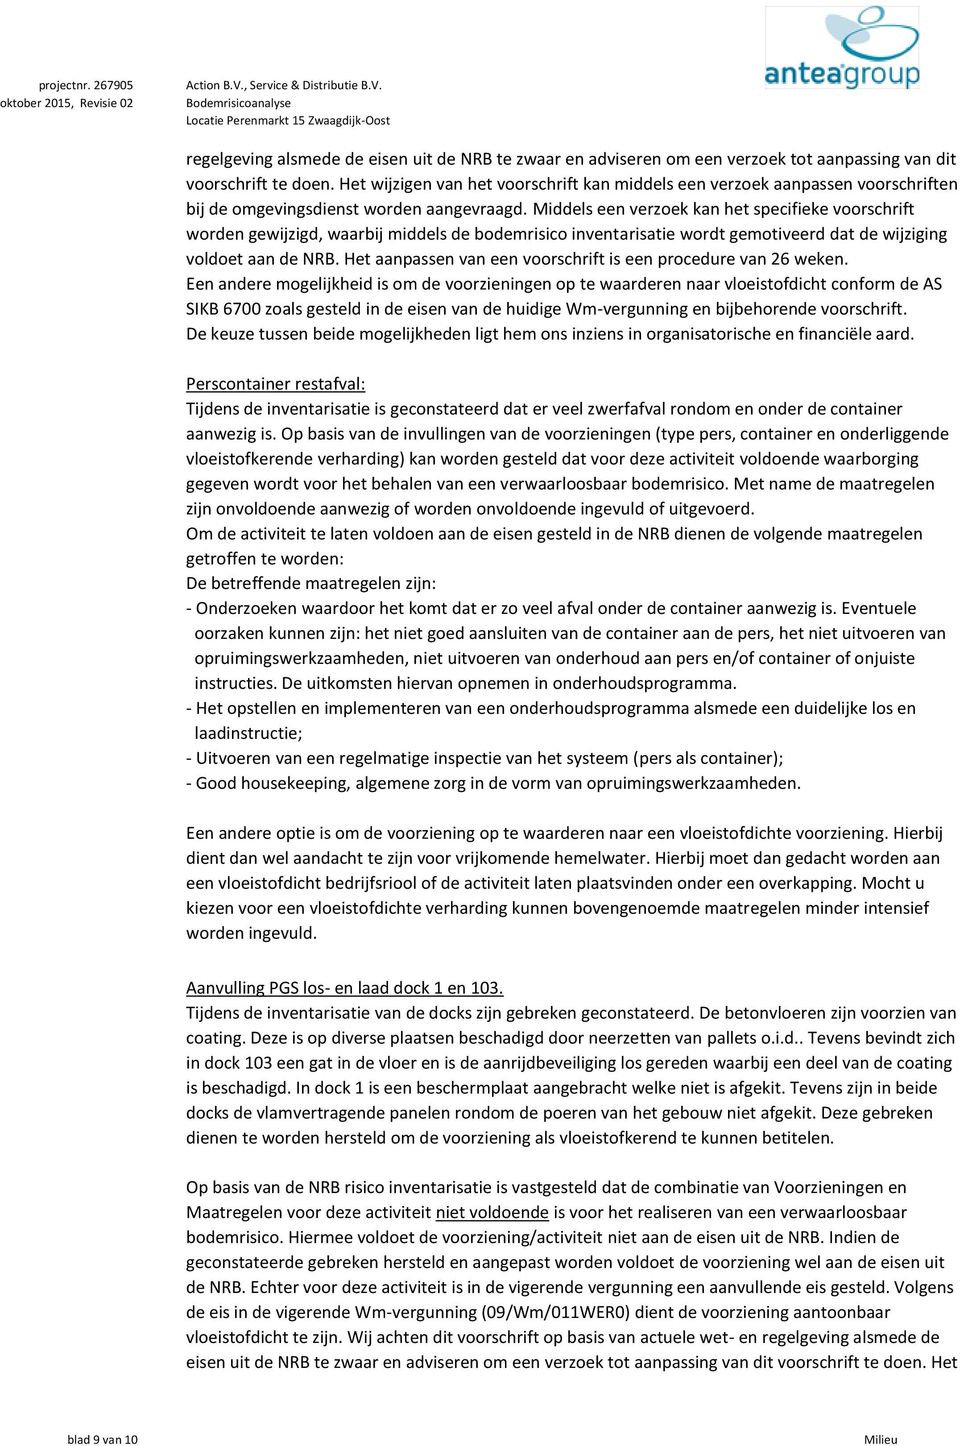 Bodemrisicoanalyse Locatie Perenmarkt 15 Zwaagdijk-Oost regelgeving alsmede de eisen uit de NRB te zwaar en adviseren om een verzoek tot aanpassing van dit voorschrift te doen.